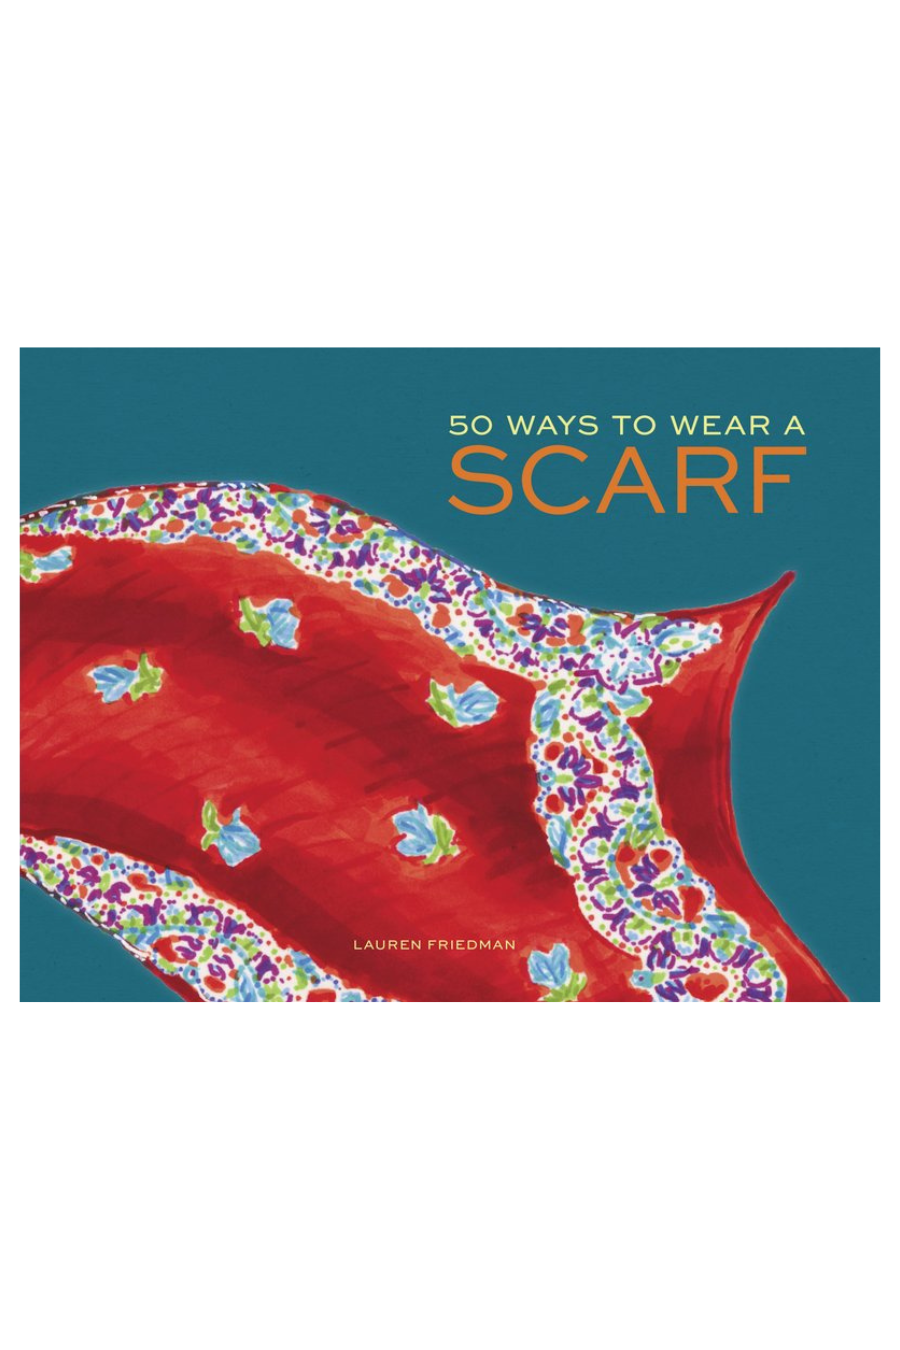 50 Ways to Wear a Scarf